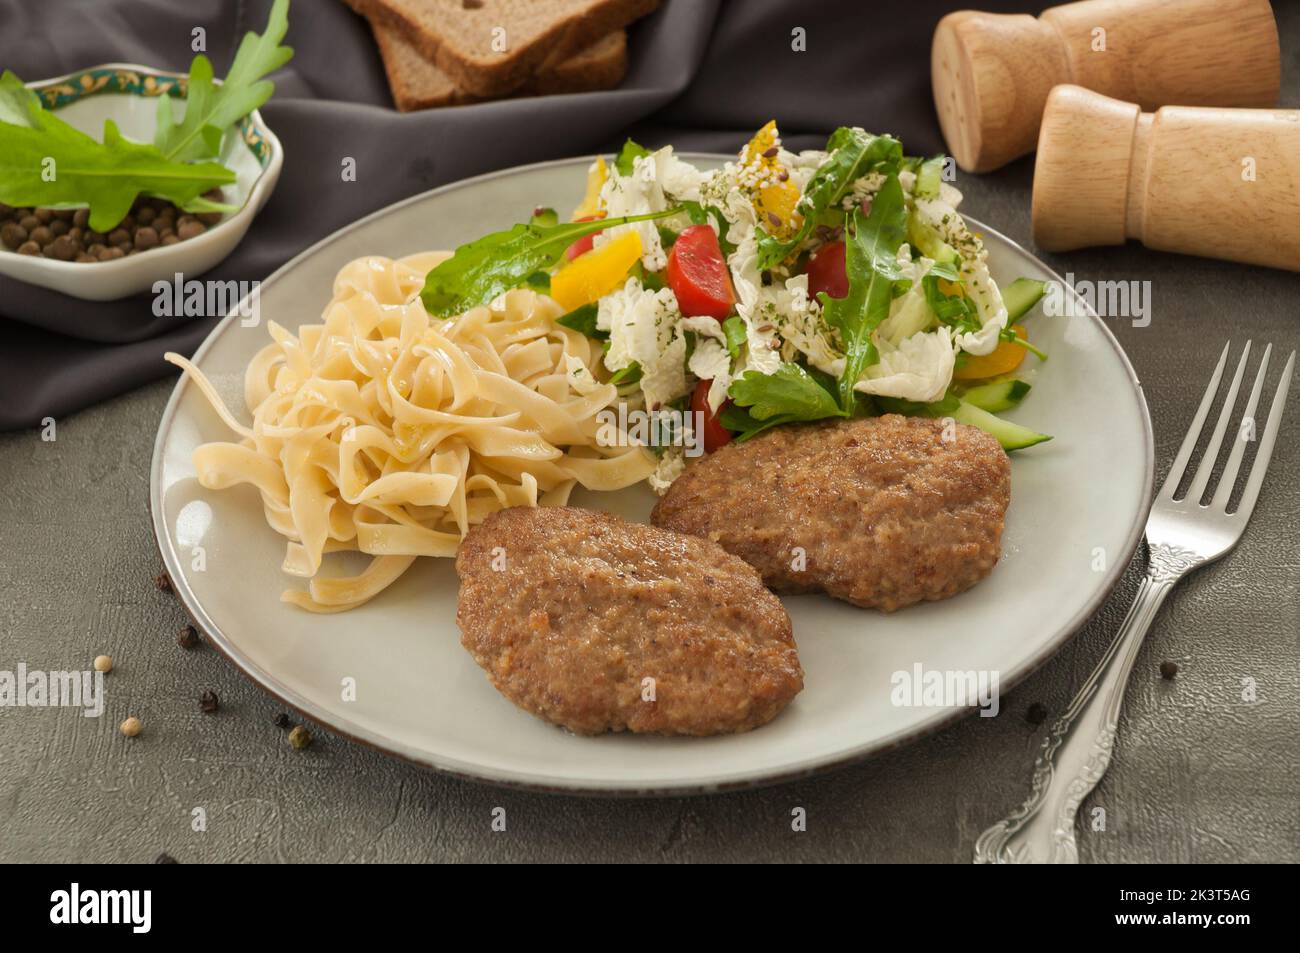 Leckere Koteletts mit Nudeln und Salat auf einem grauen Teller Stockfoto